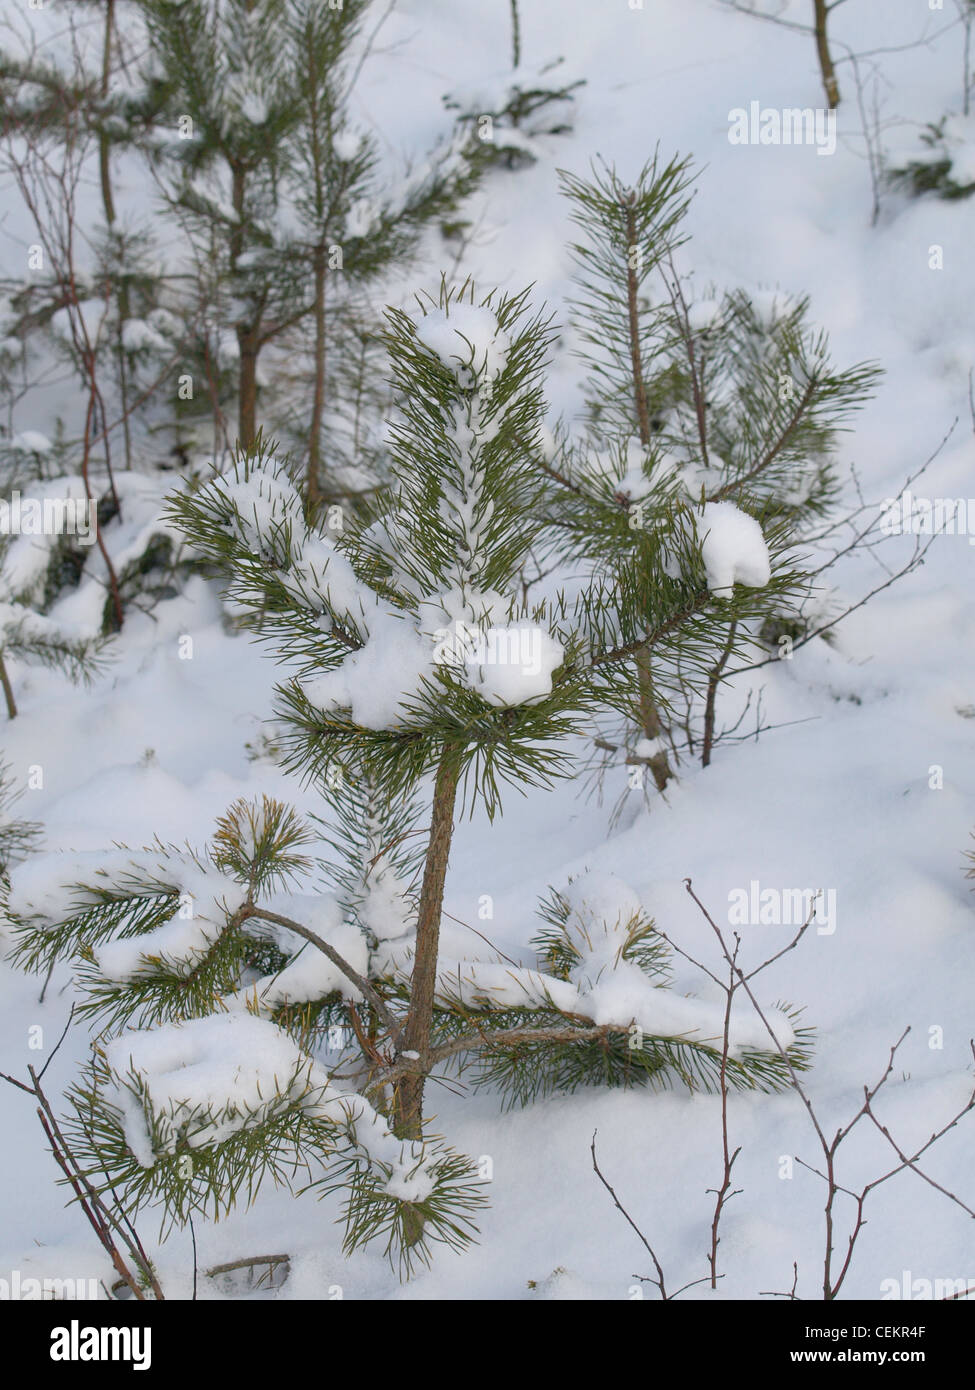 En pin avec neige / Pinus / Kiefer mit Schnee Banque D'Images